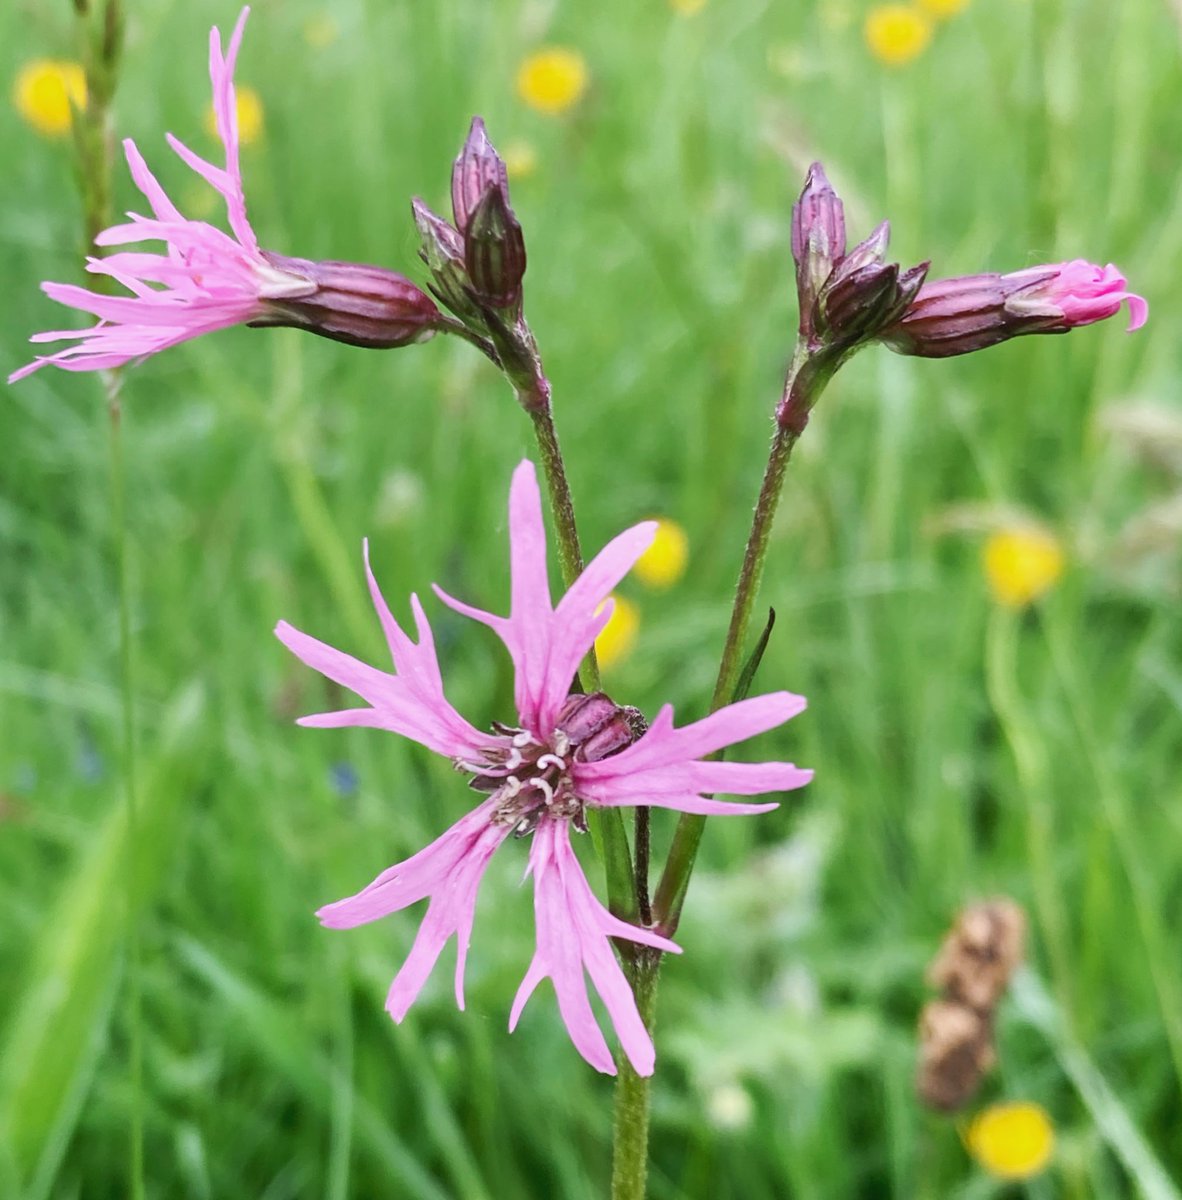 Ragged-robin - Lychnis flos-cuculi
flowering in a damp meadow #Wildflowerhour #Pinkfamily